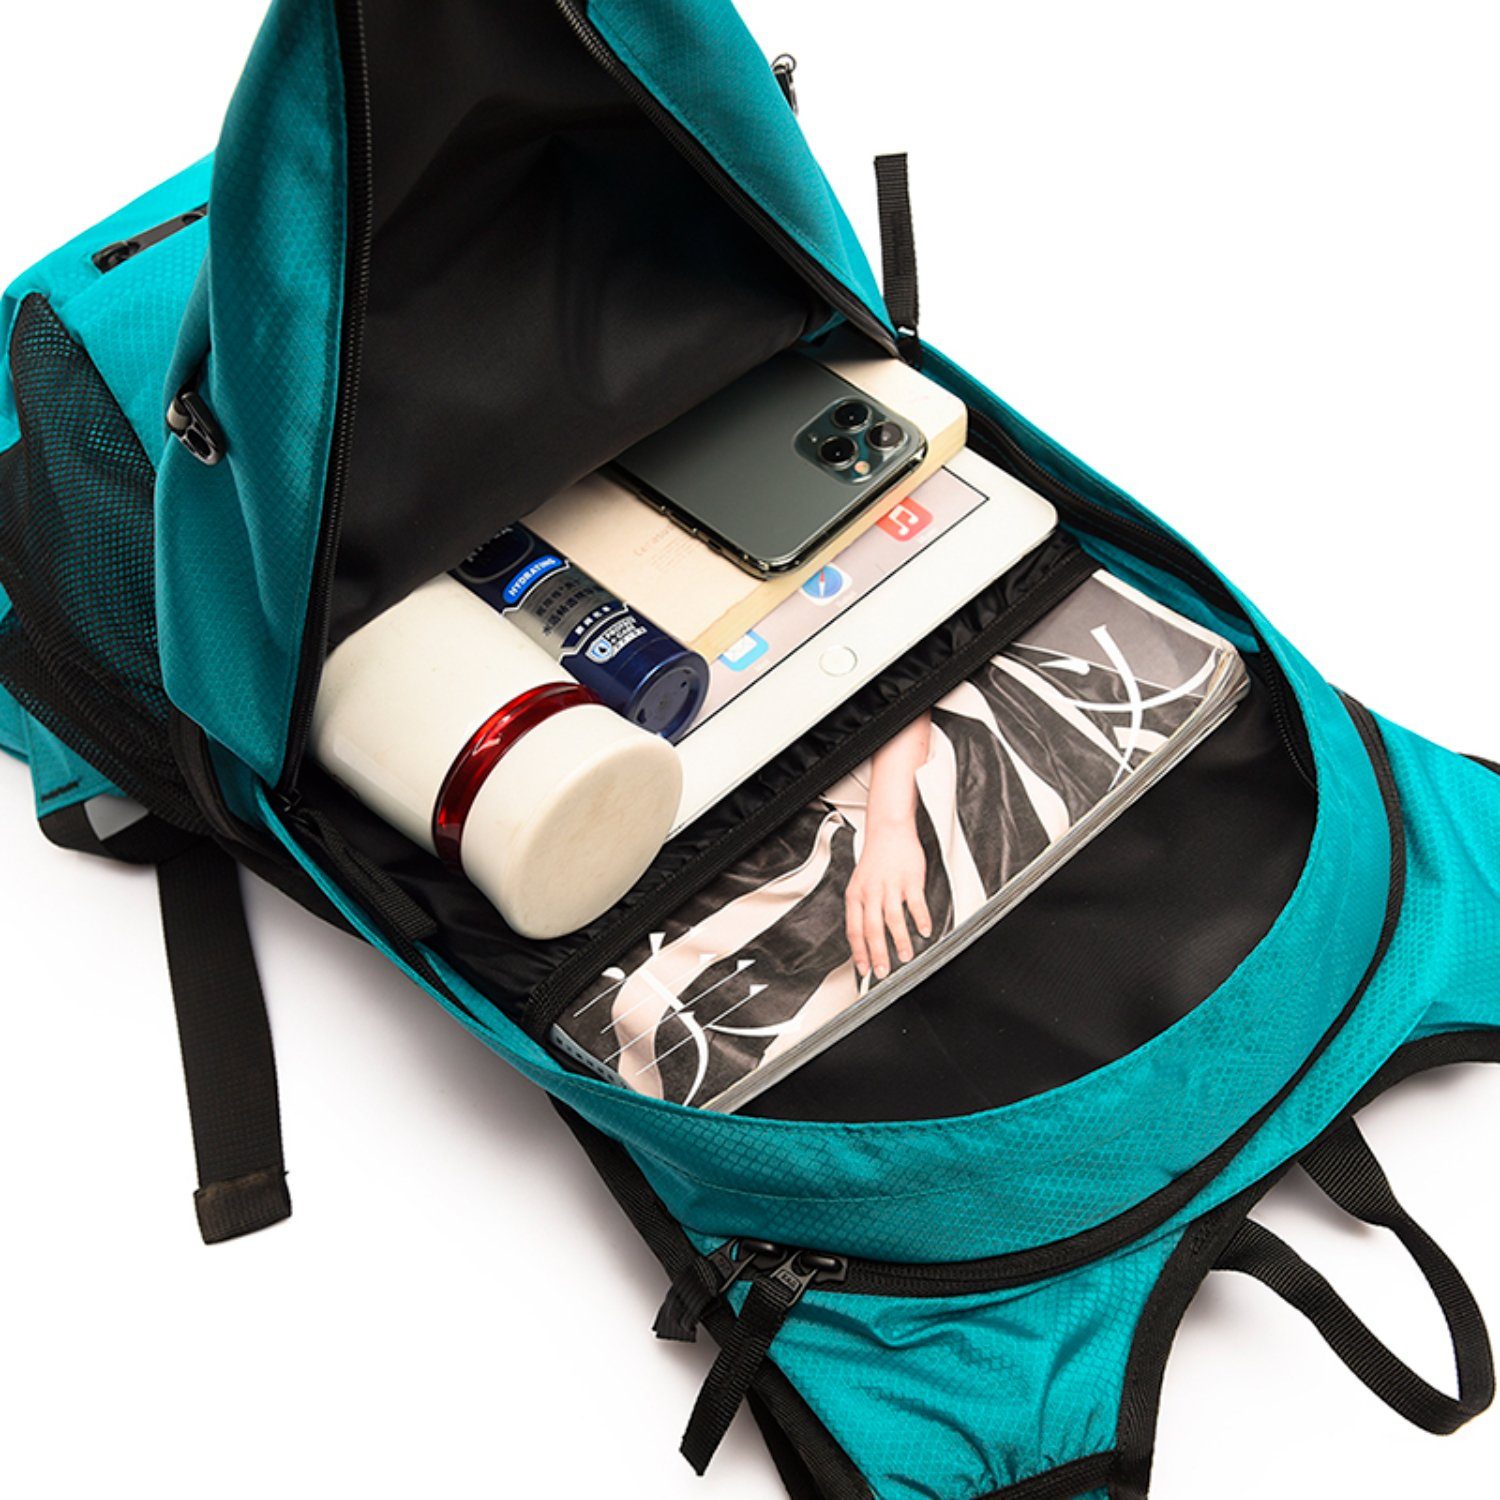 Grün Wanderrucksack, Tagesrucksack Reisetasche für G4Free Camping